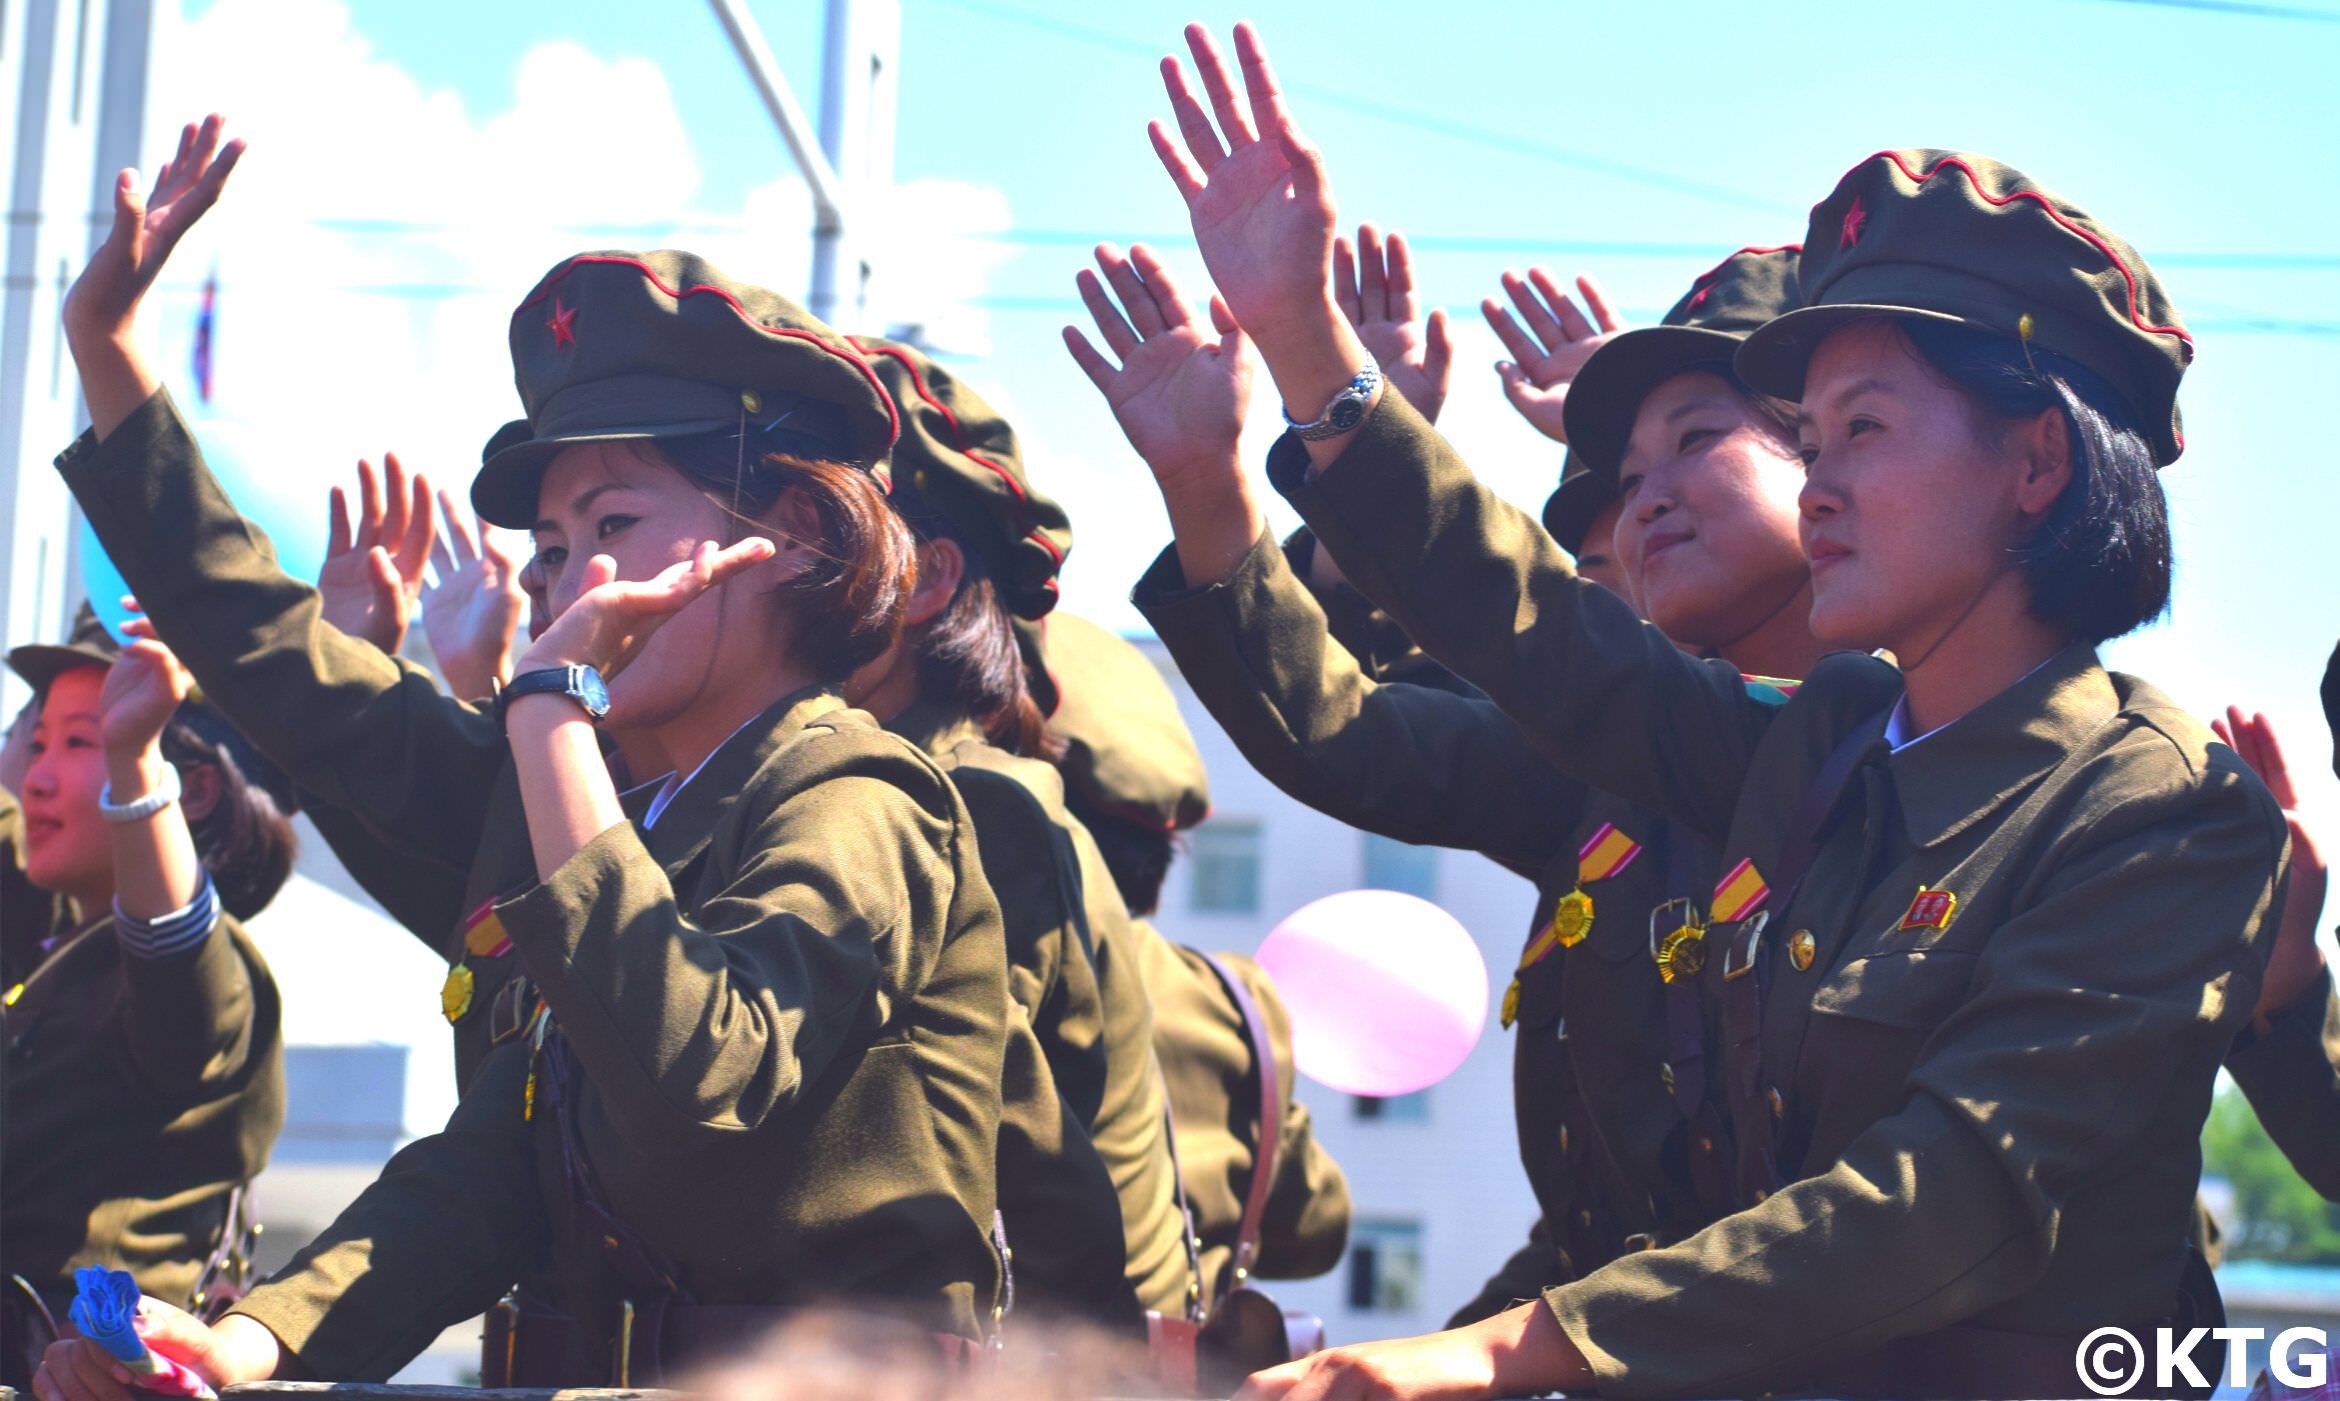 Mujeres soldados norcoreanos en un desfile militar en Pyongyang, capital de la RPDC. Viaje a Corea del Norte organizado por KTG Tours